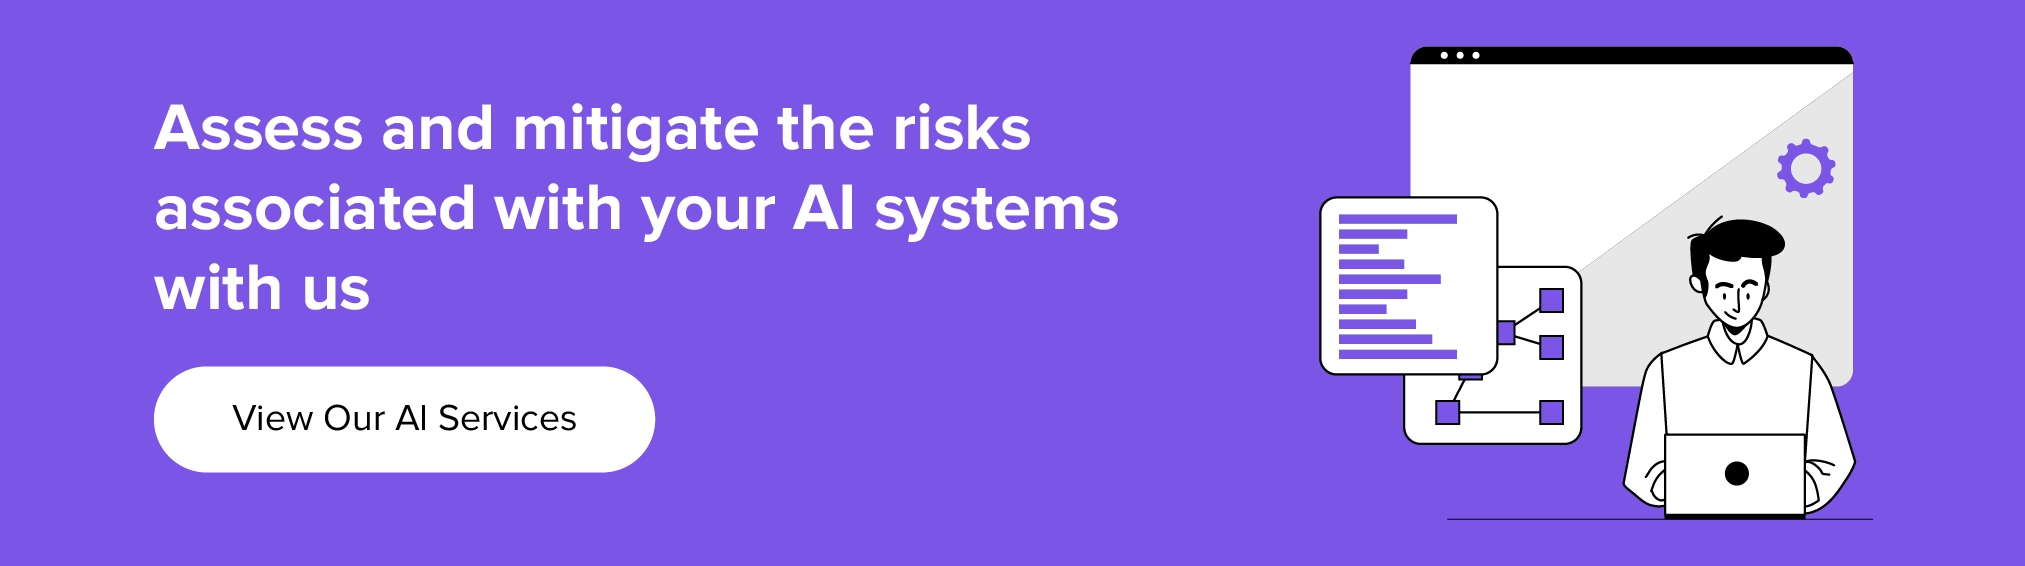 AI 시스템과 관련된 위험을 평가하고 완화하기 위해 우리와 협력하십시오.